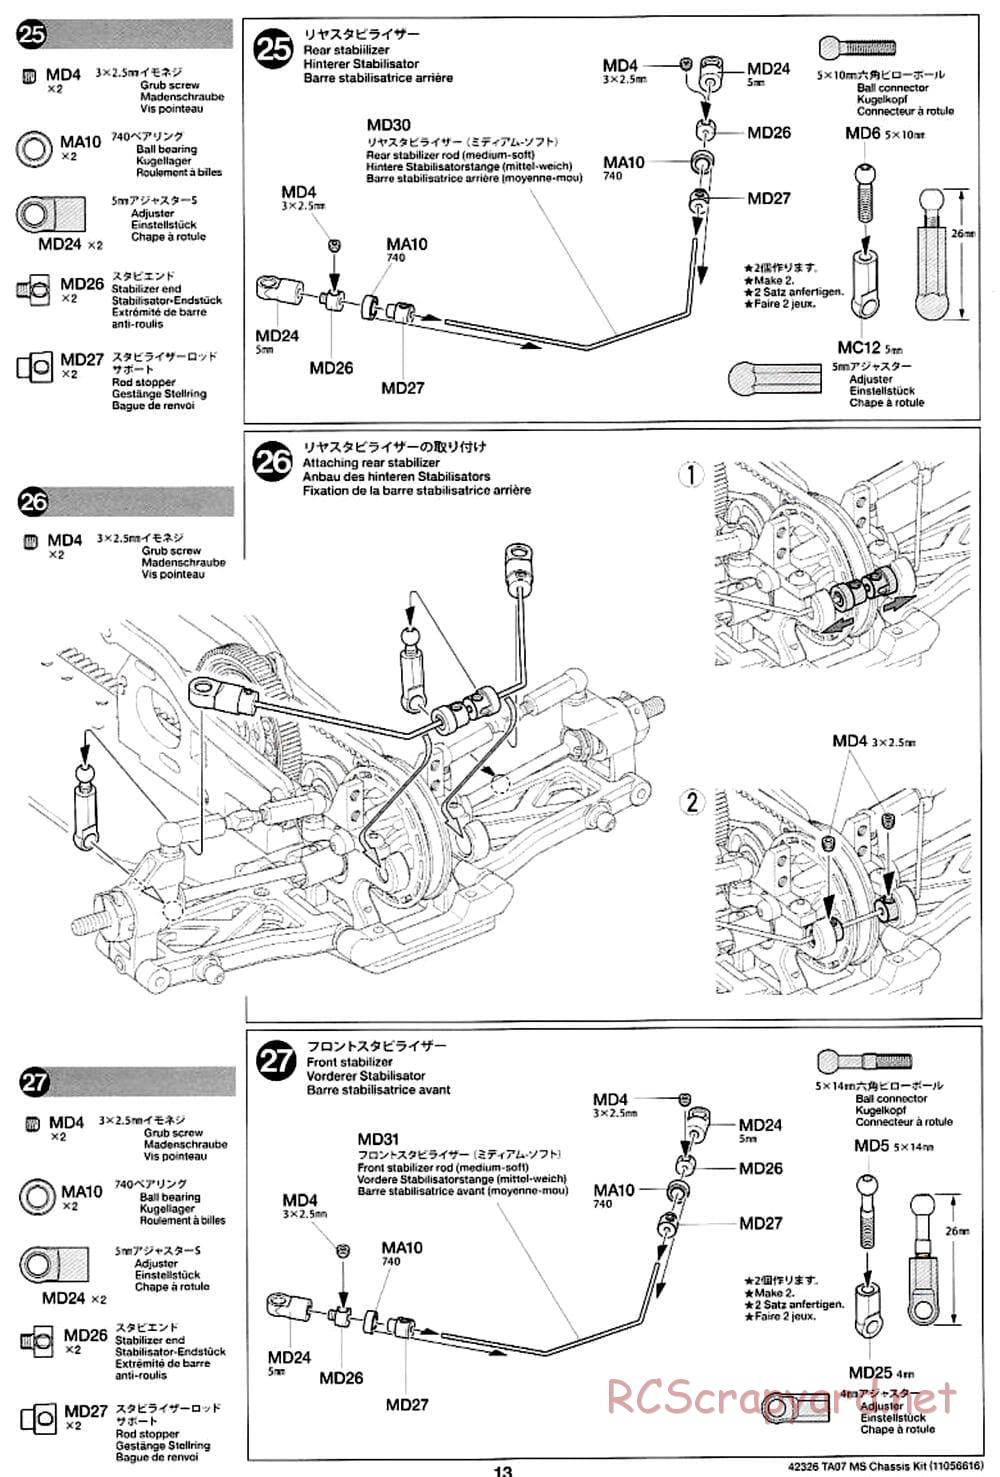 Tamiya - TA07 MS Chassis - Manual - Page 13